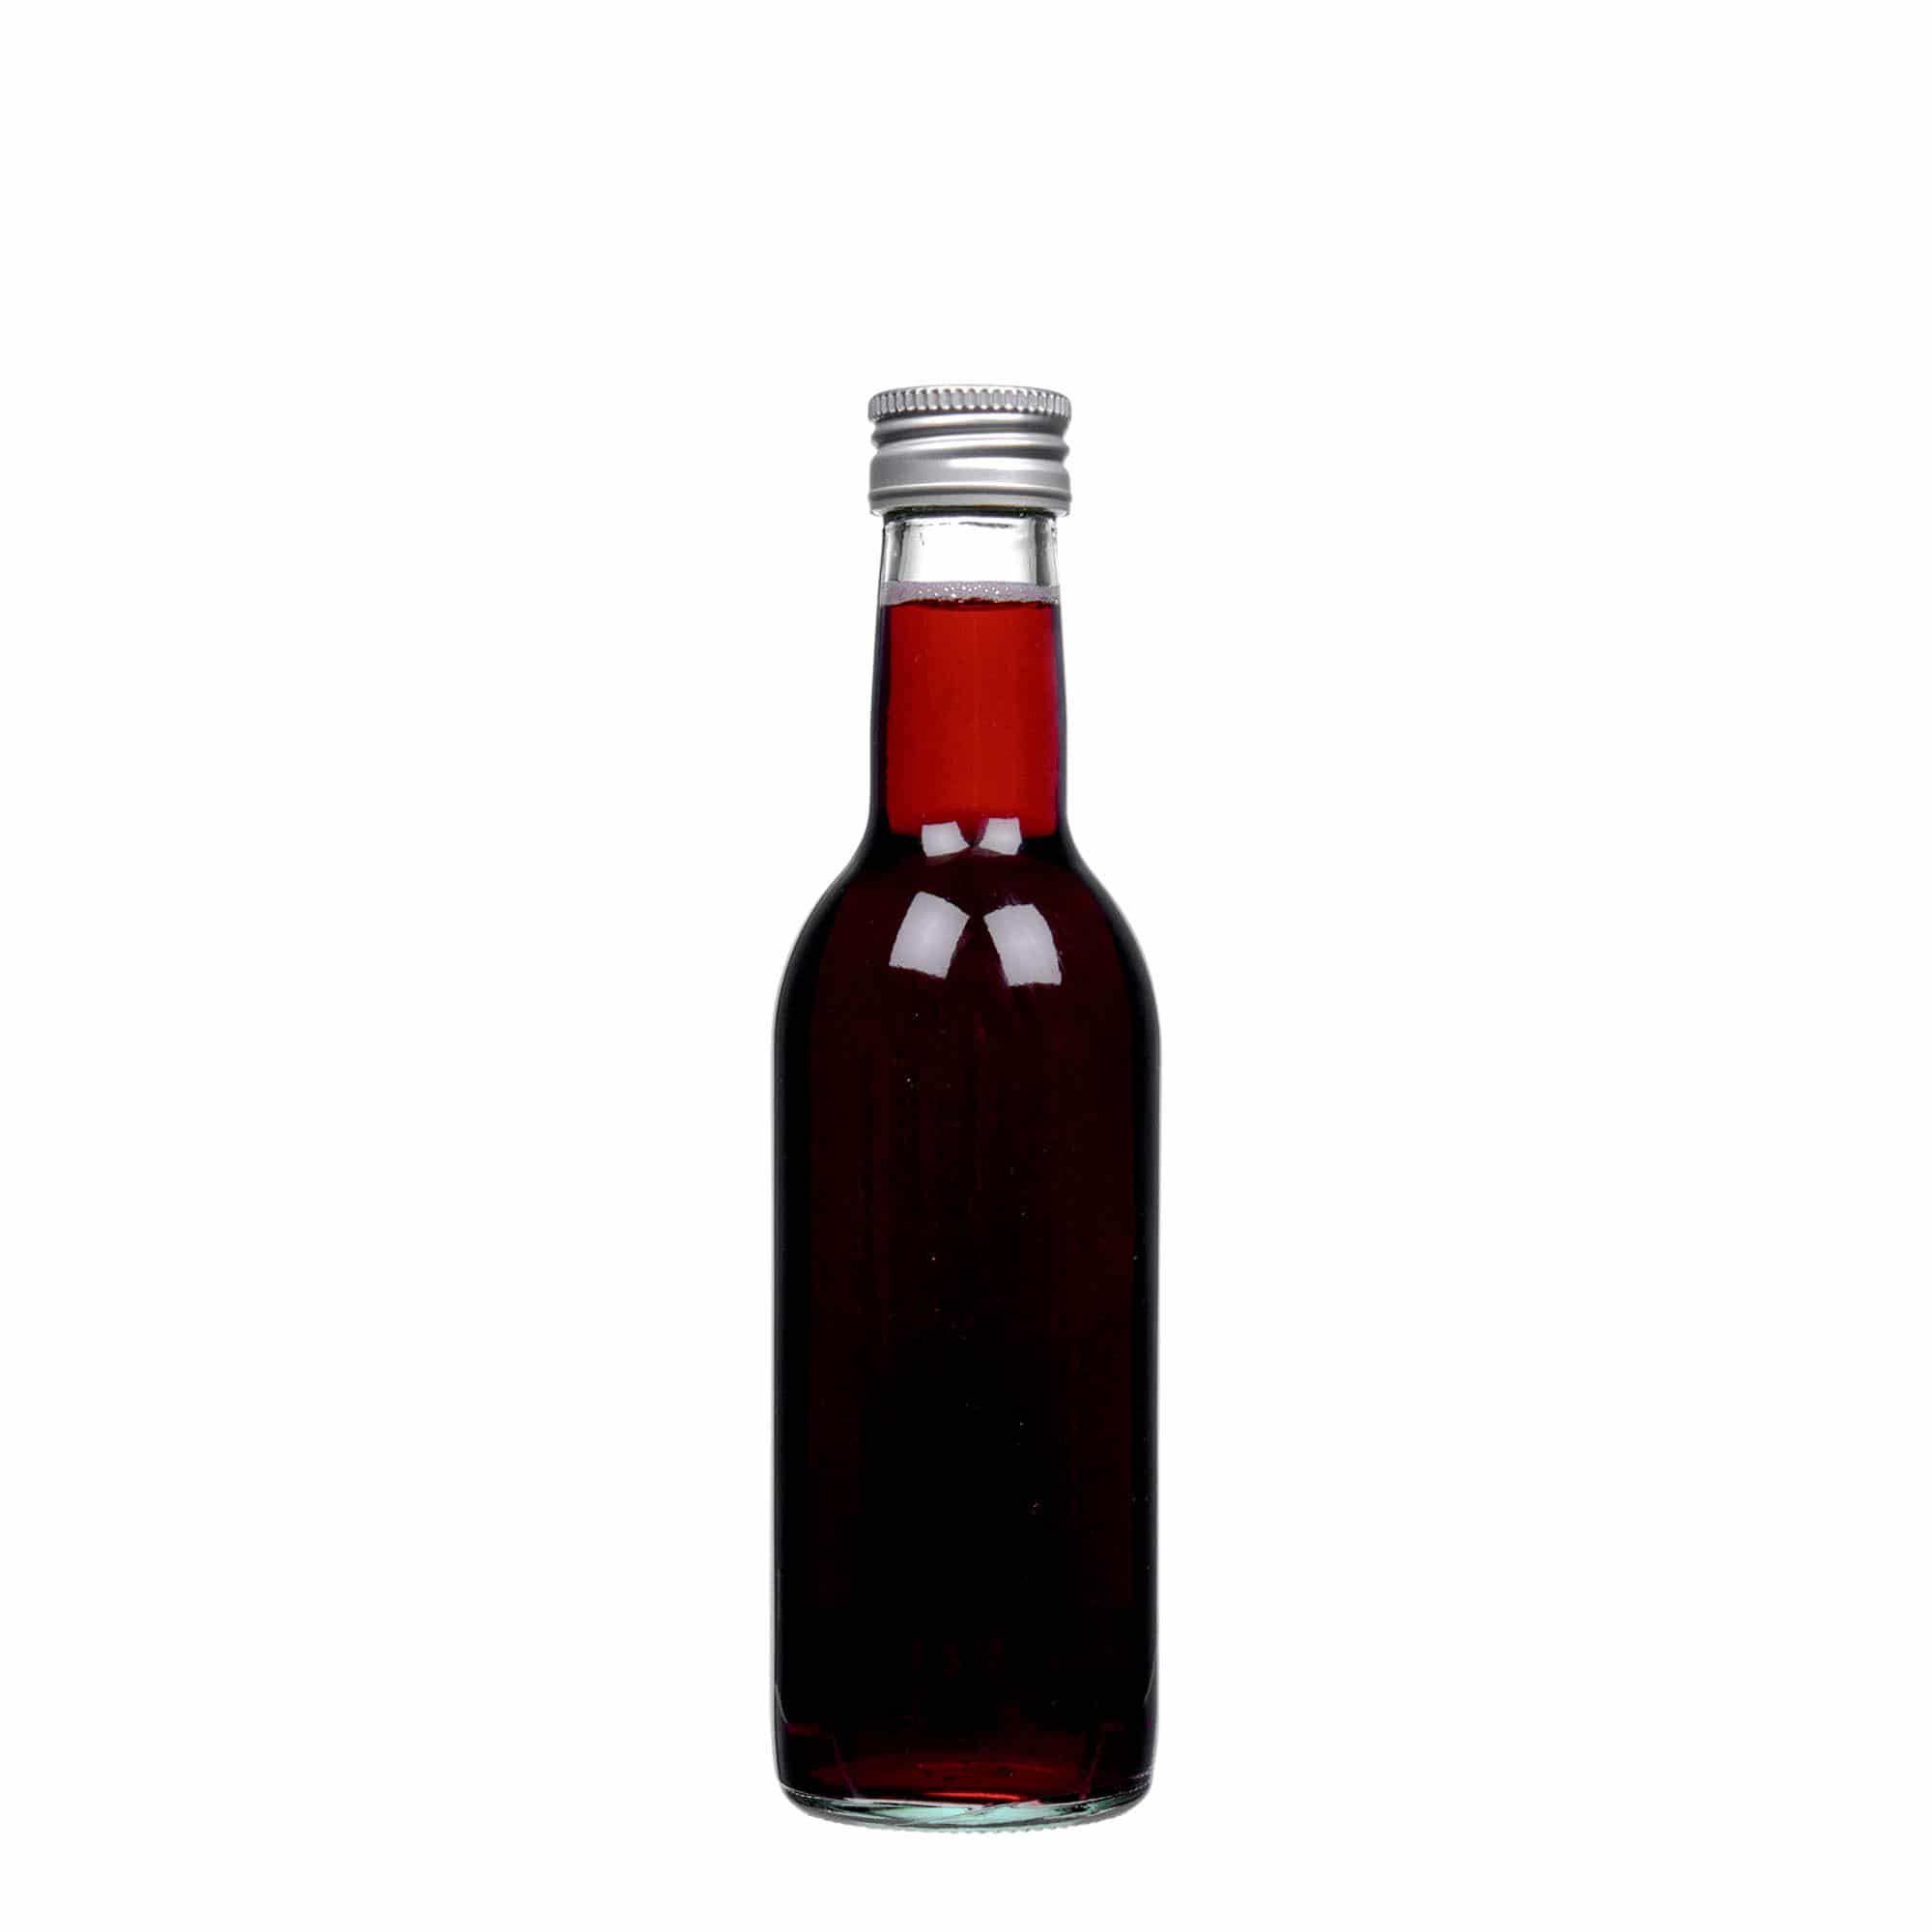 250 ml glass bottle 'Bordeaux', closure: PP 28